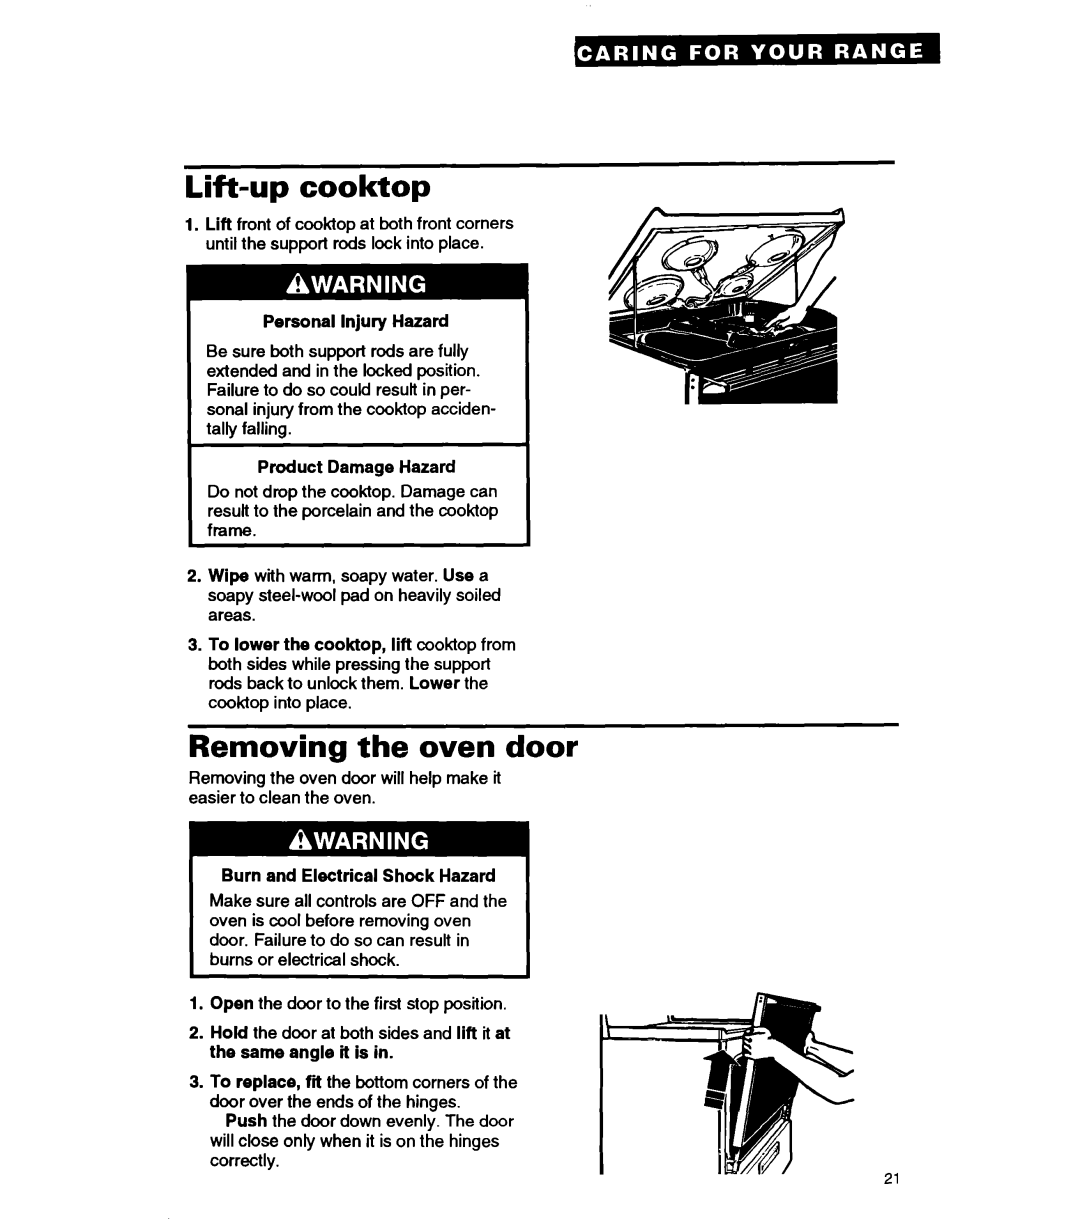 Whirlpool RF330PXA warranty Lift-upcooktop, Removing the oven door, Personal Injury Hazard, Product Damage Hazard 